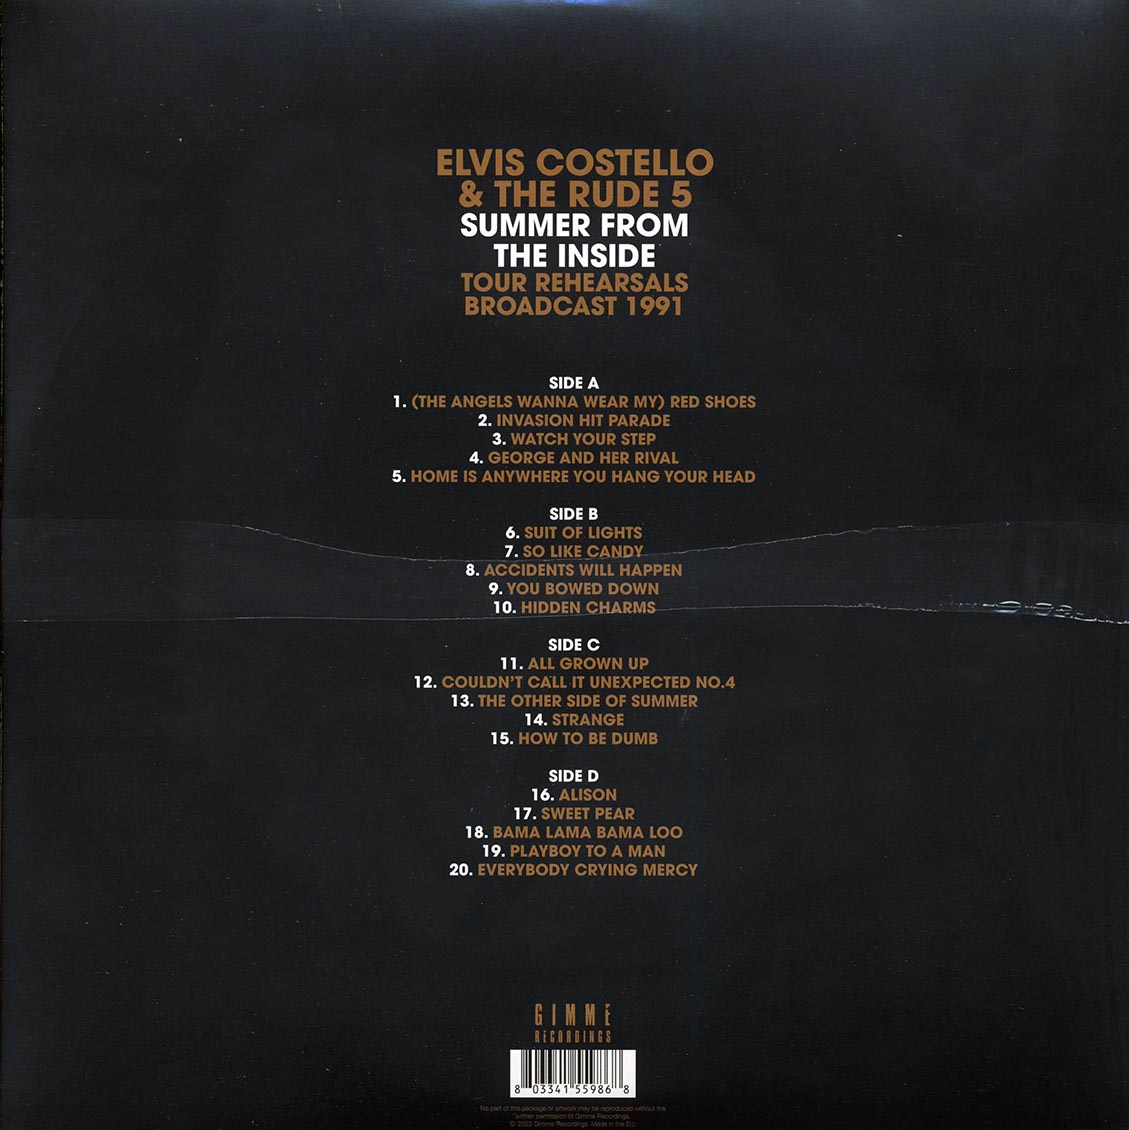 Elvis Costello & The Rude 5 - Summer From The Inside: Arlington Theater, Santa Barbara, CA, 25th May 1991 (2xLP) - Vinyl LP, LP